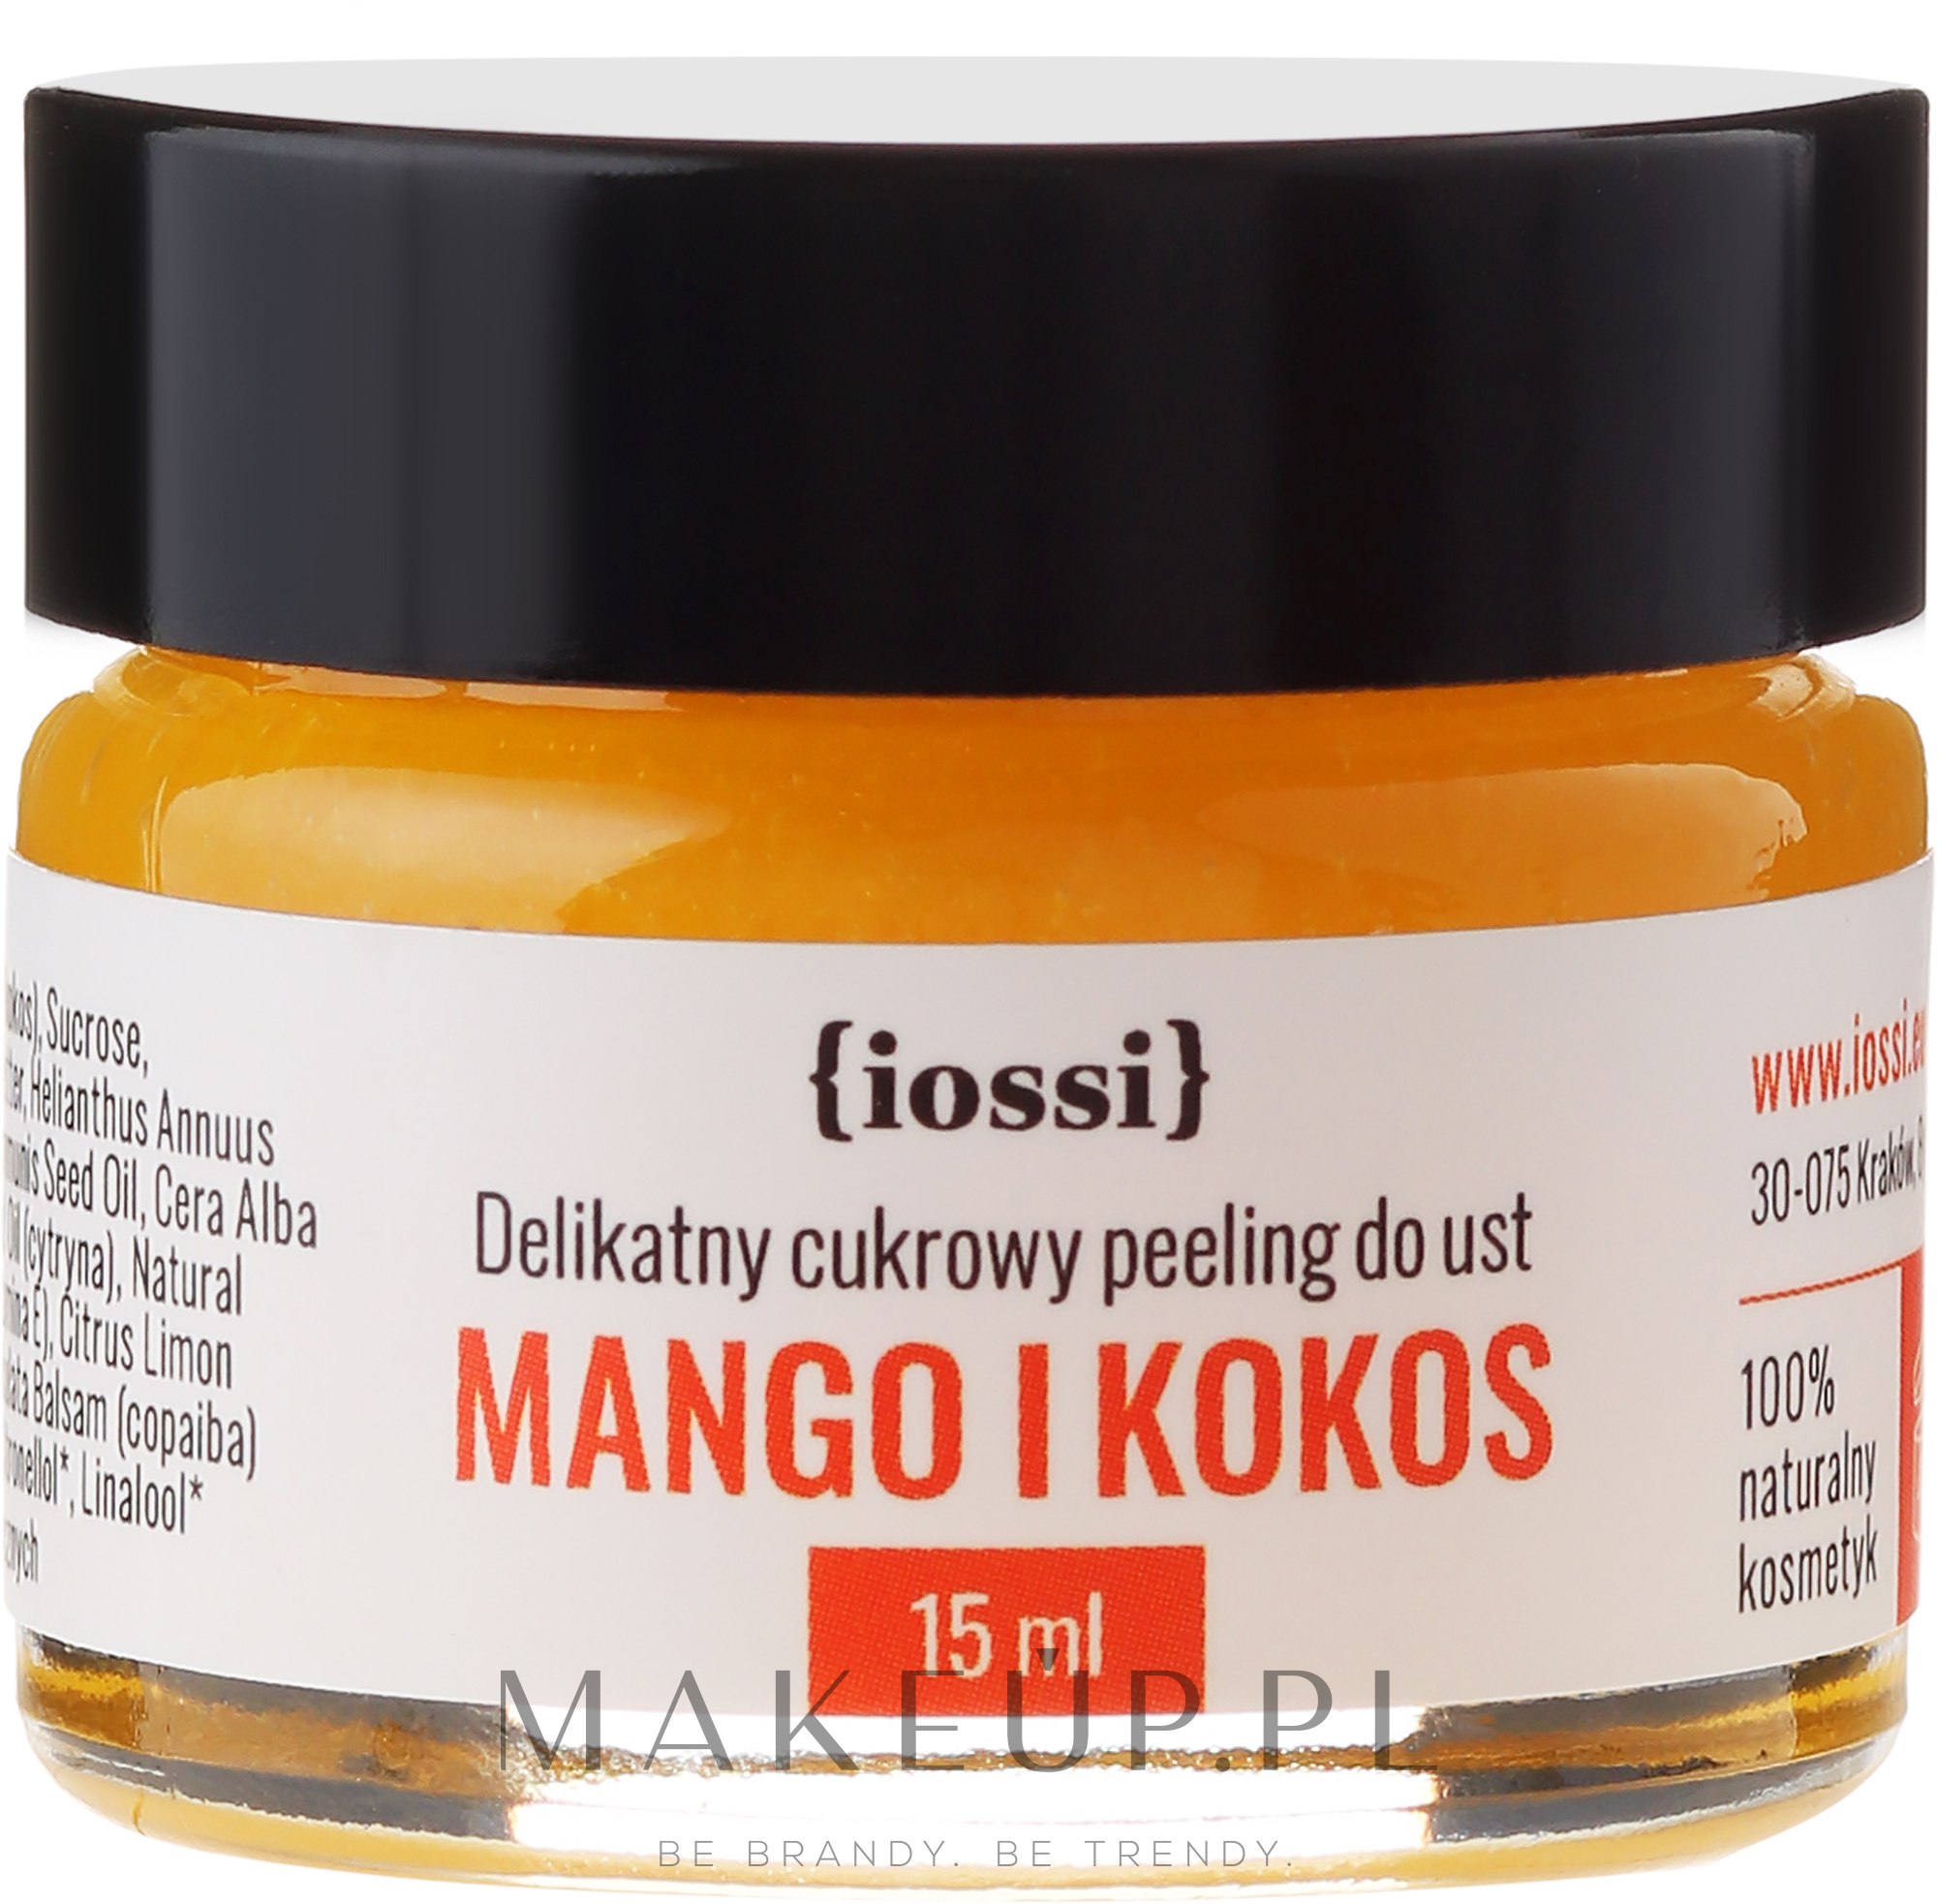 Delikatny cukrowy peeling do ust Mango i kokos - Iossi — Zdjęcie 15 ml